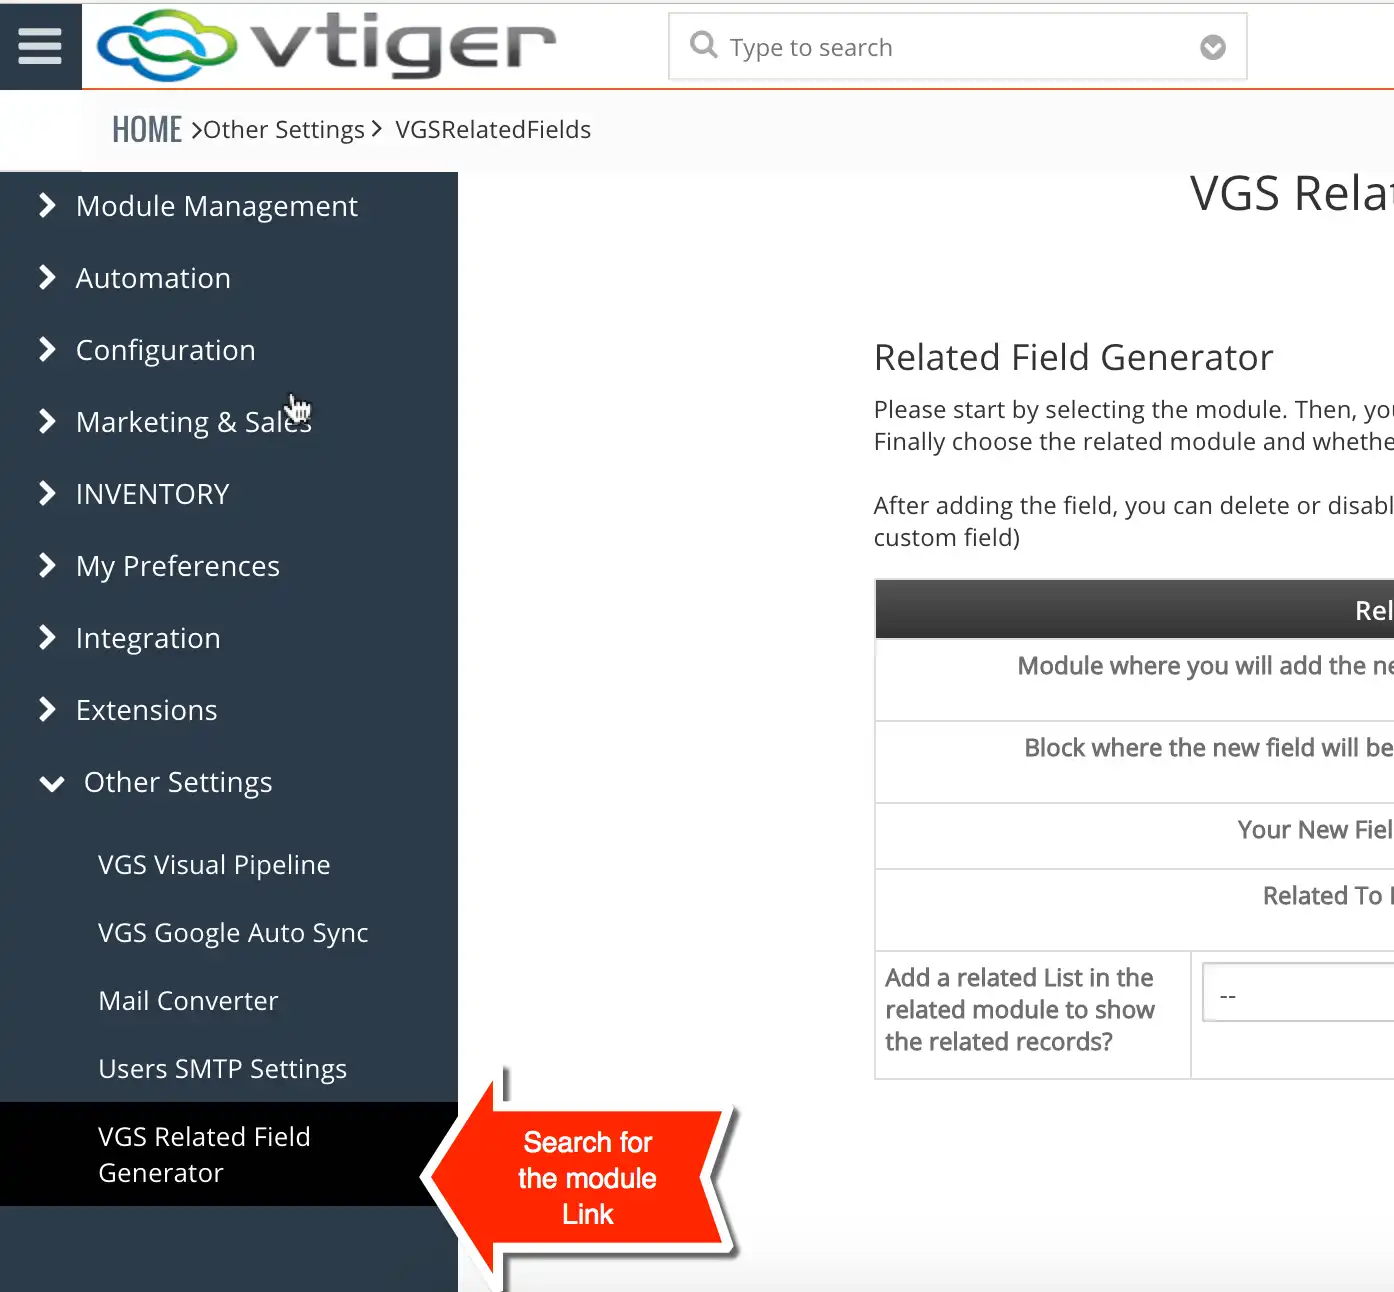 Laden Sie das Web-Tool oder die Web-App VGS Related Field Generator herunter